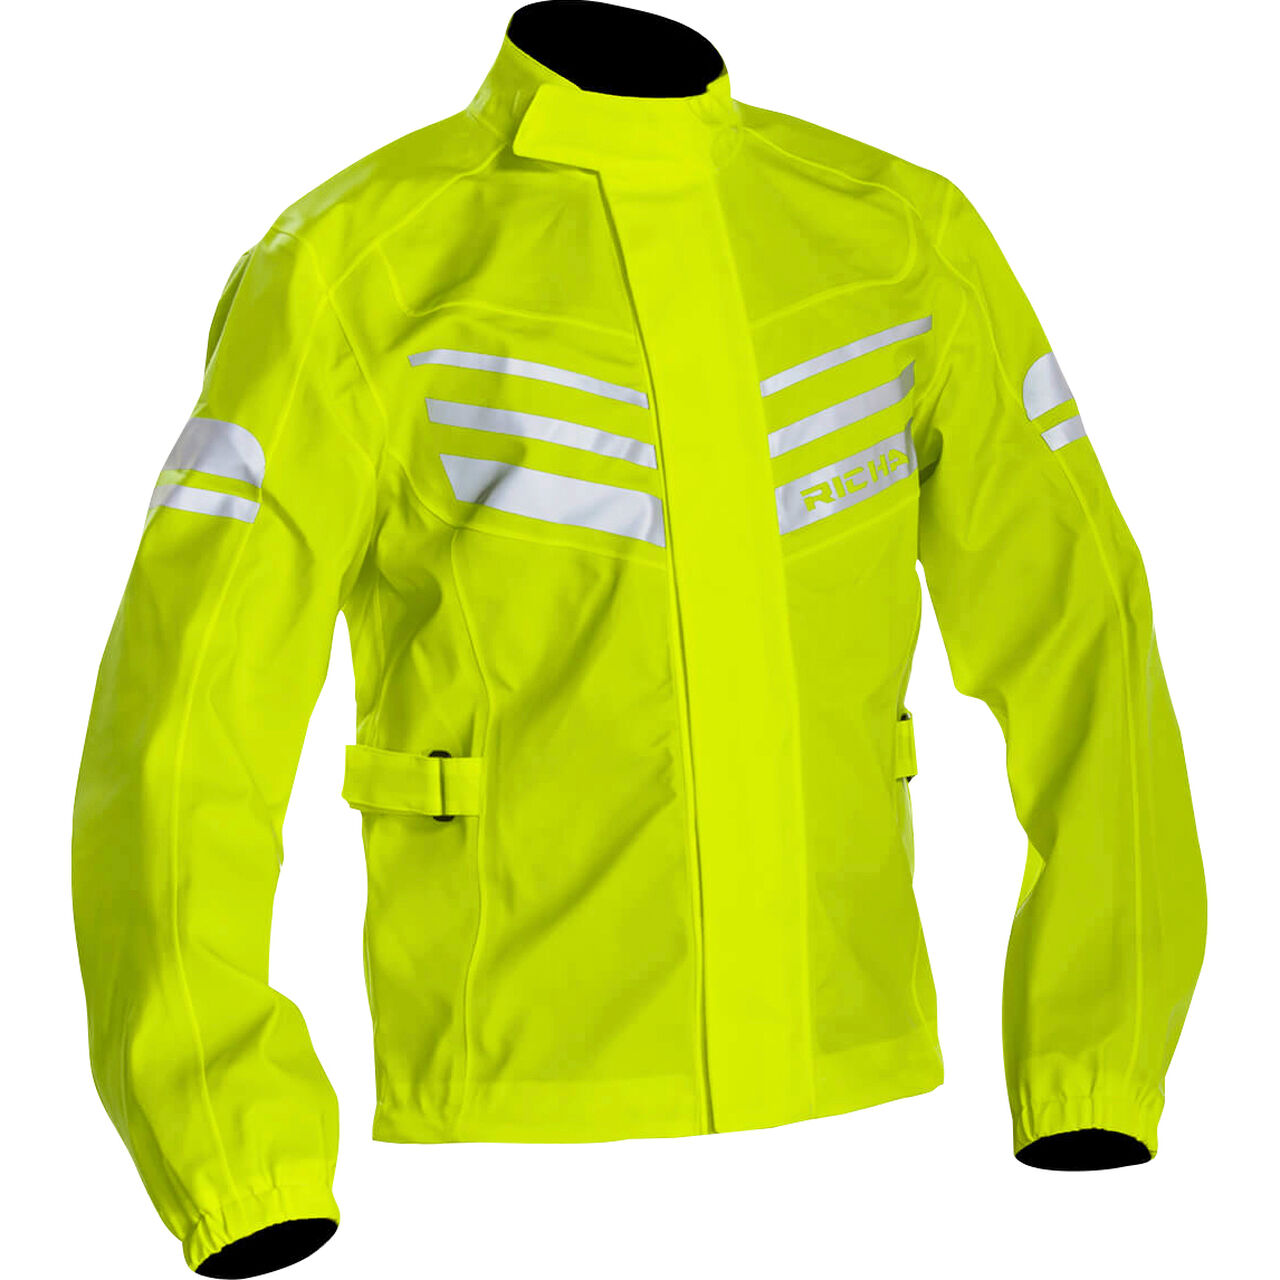 RST Pro Series hi viz waterproof motorcycle over jacket